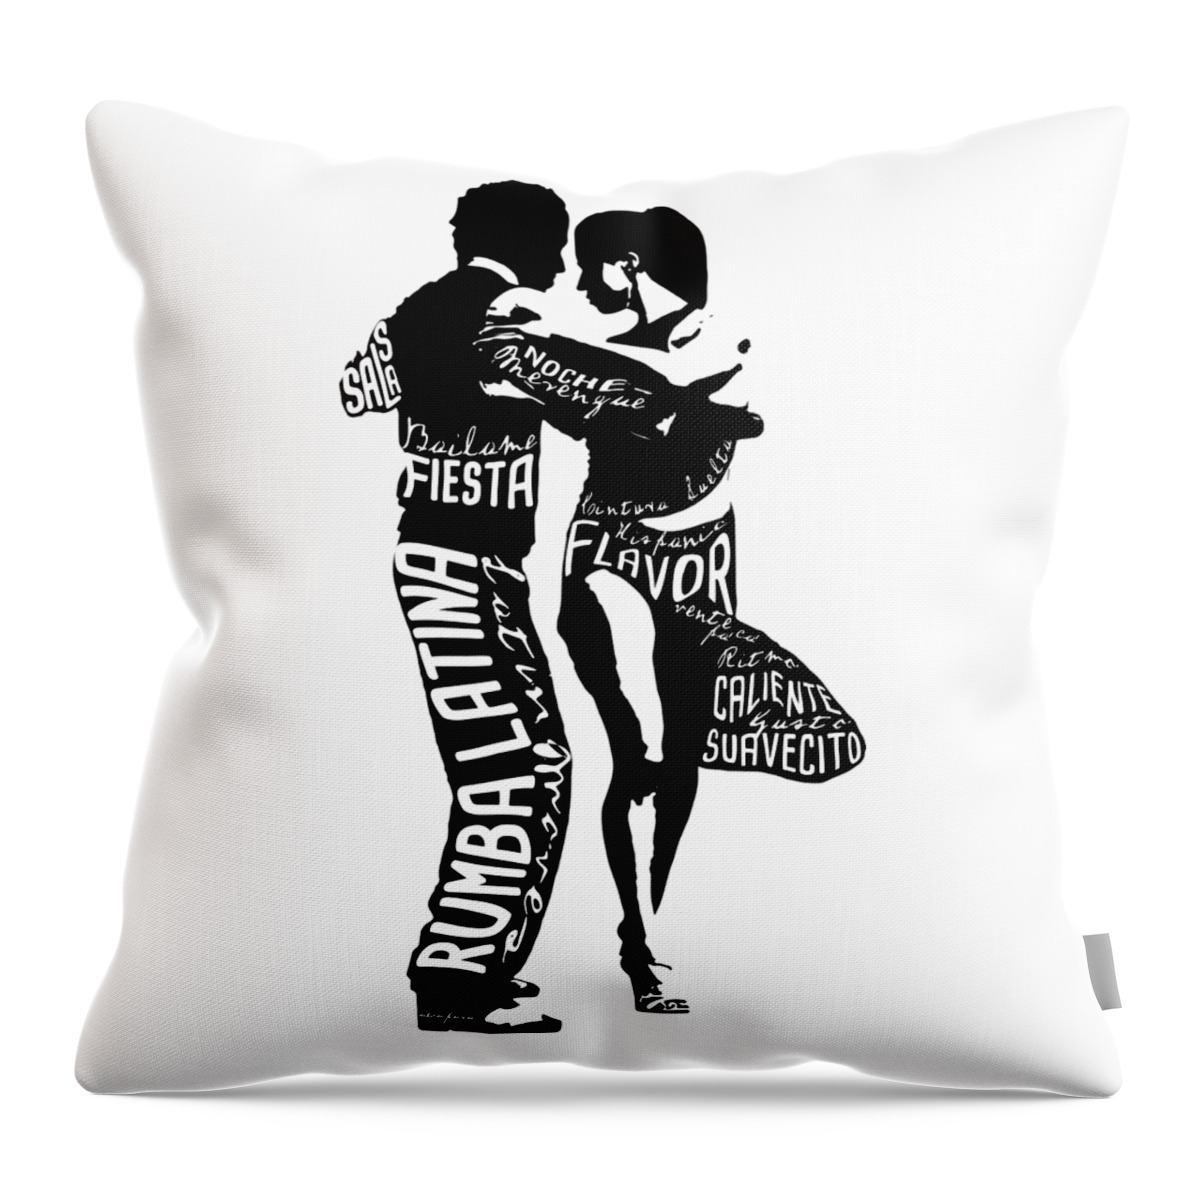 Couple Dancing Latin Music Throw Pillow featuring the digital art Couple Dancing Latin Music by Patricia Awapara